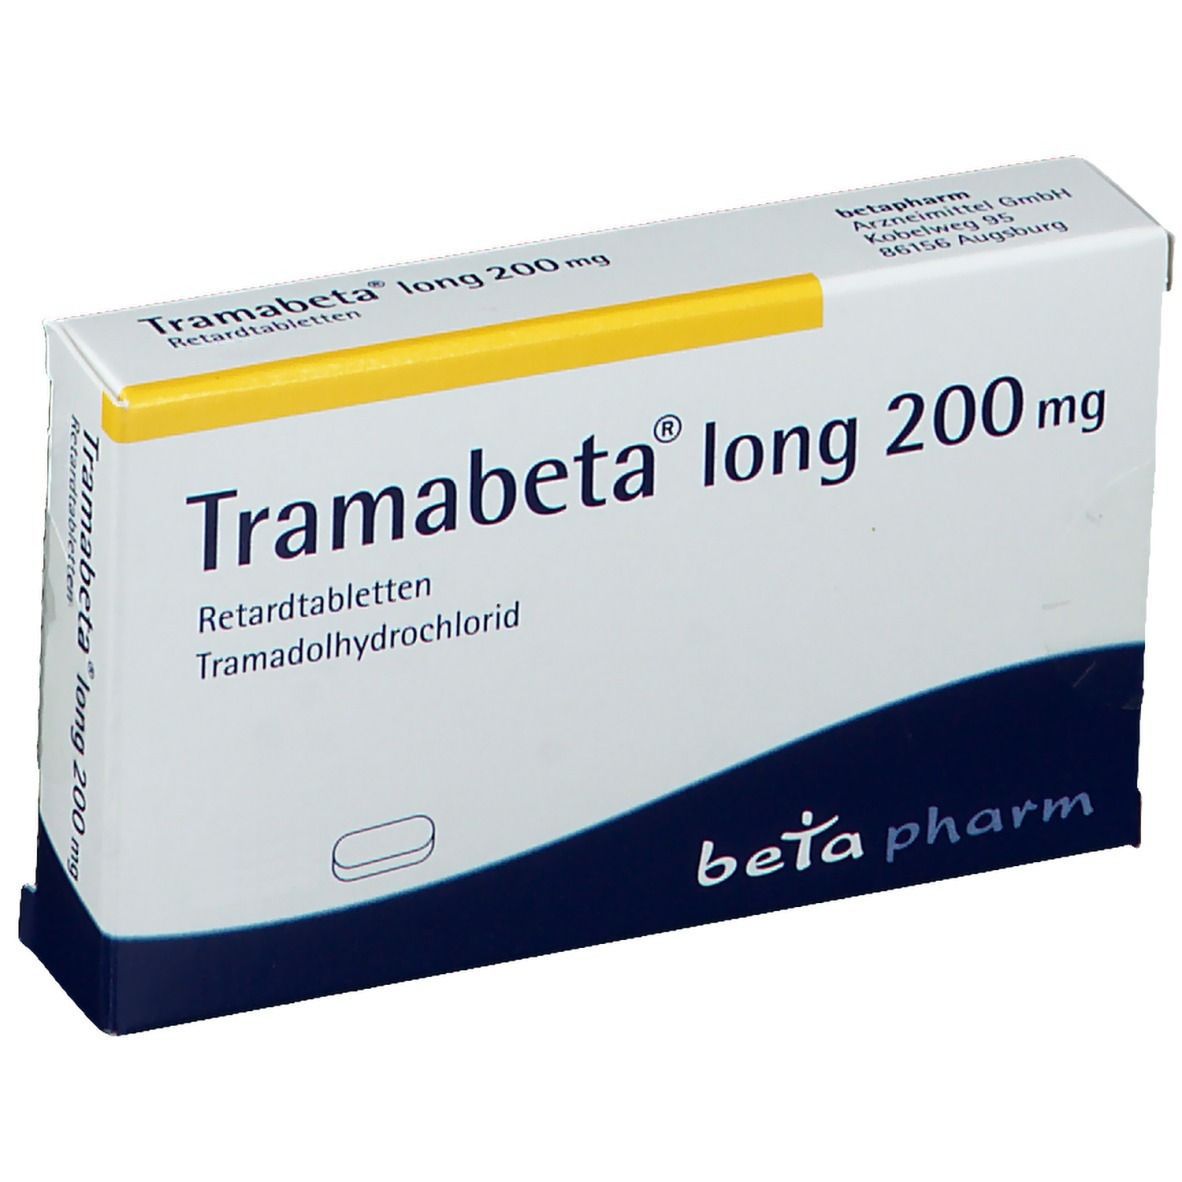 Tramabeta® long 200 mg